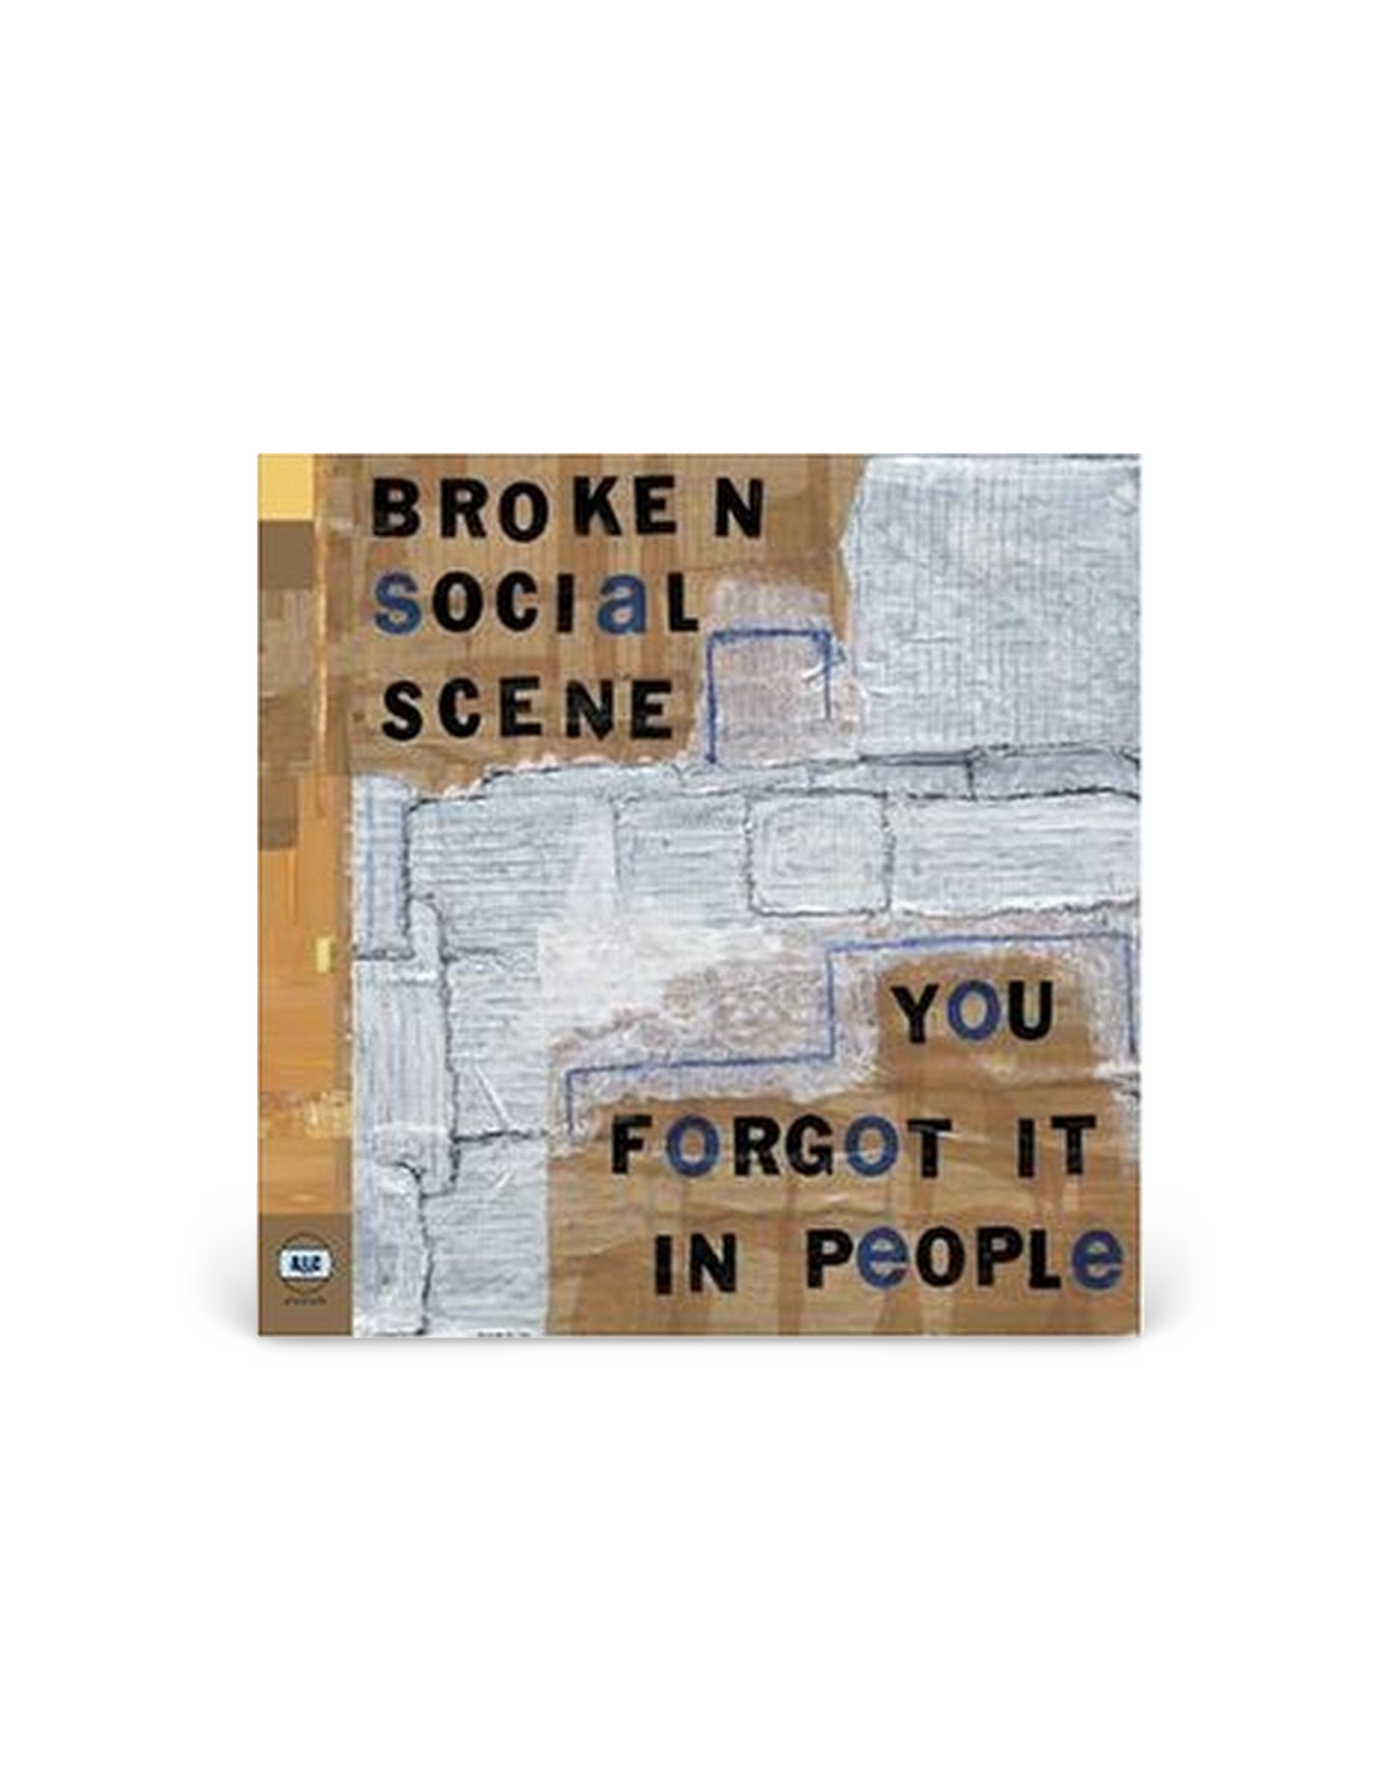 Vinilo 12” - Broken Social Scene You Forgot It in People